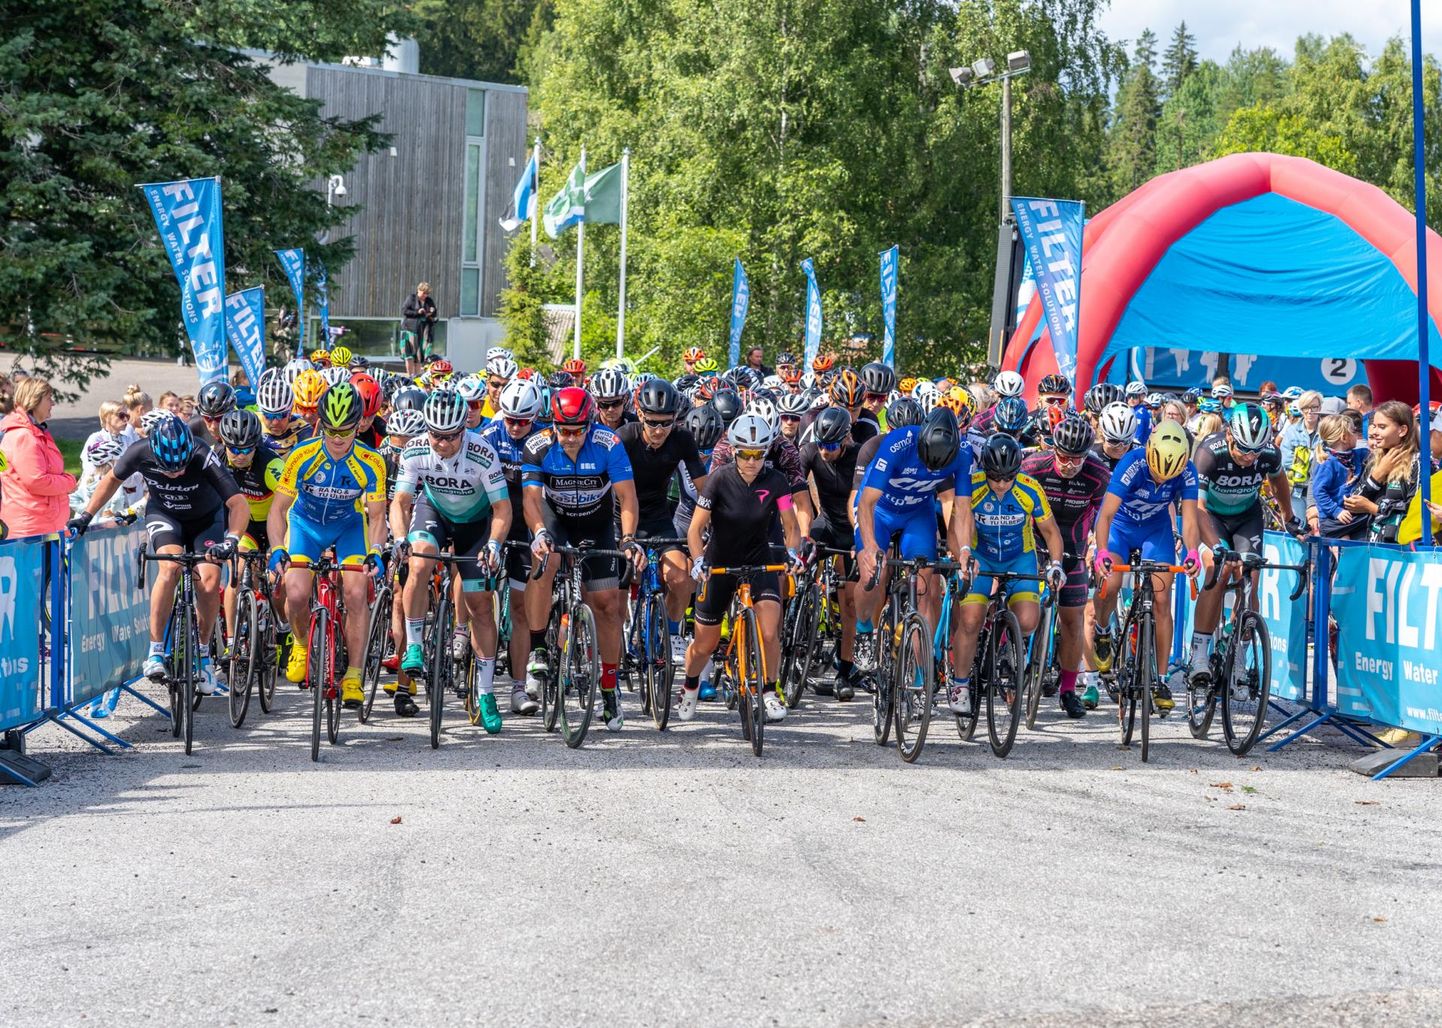 Laupäeval toimunud Suure-Munamäe rattarallil osales ligikaudu 350 ratturit. Võistlusel osalenud kahel Läti noorsportlasel on nüüdseks diagnoositud koroonaviirus.
 